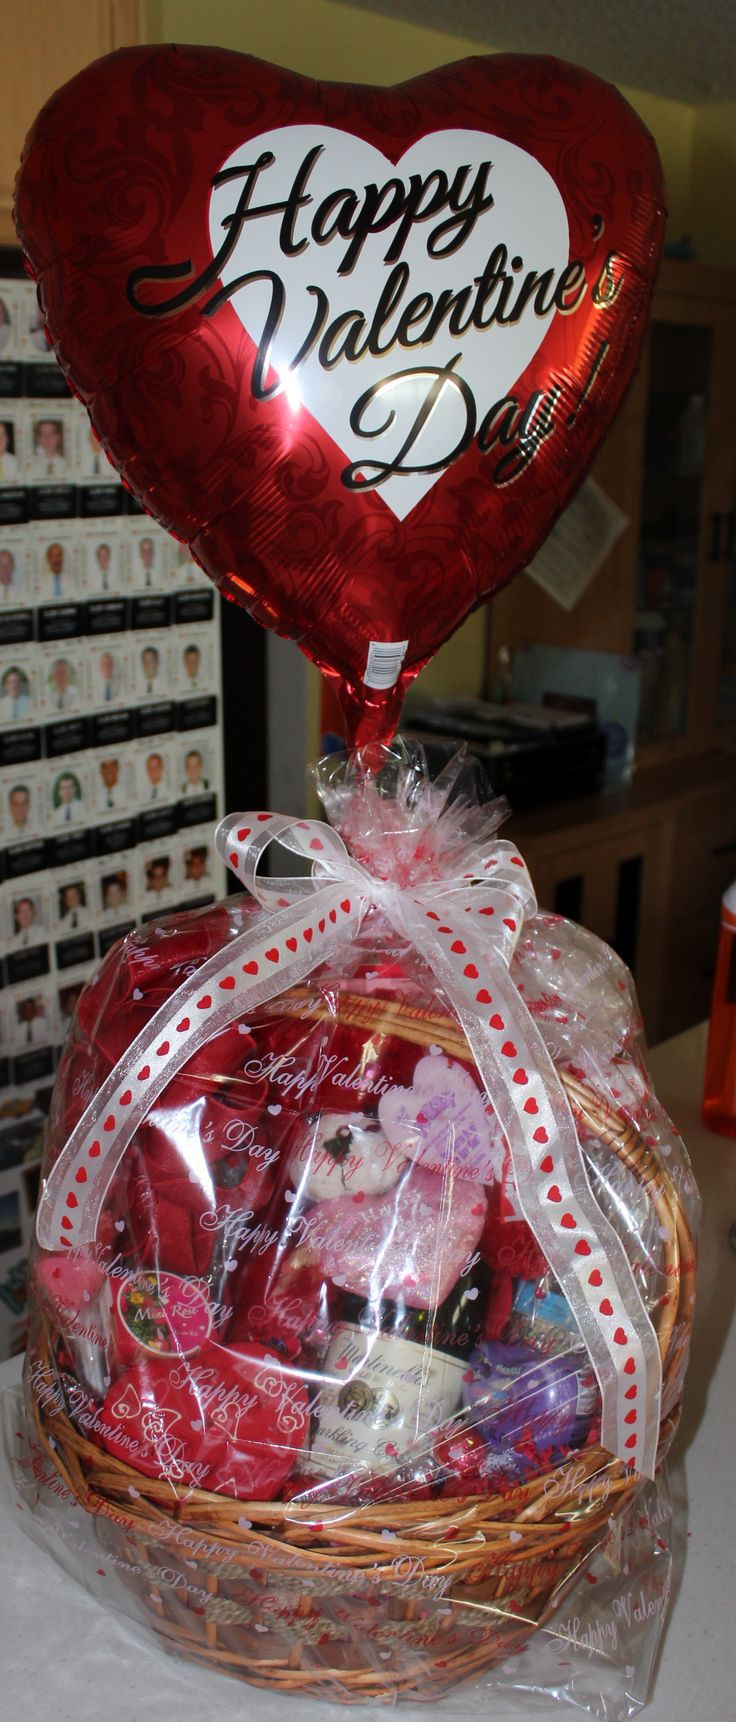 Valentines Gift Basket Ideas
 Best 25 Valentine baskets ideas on Pinterest